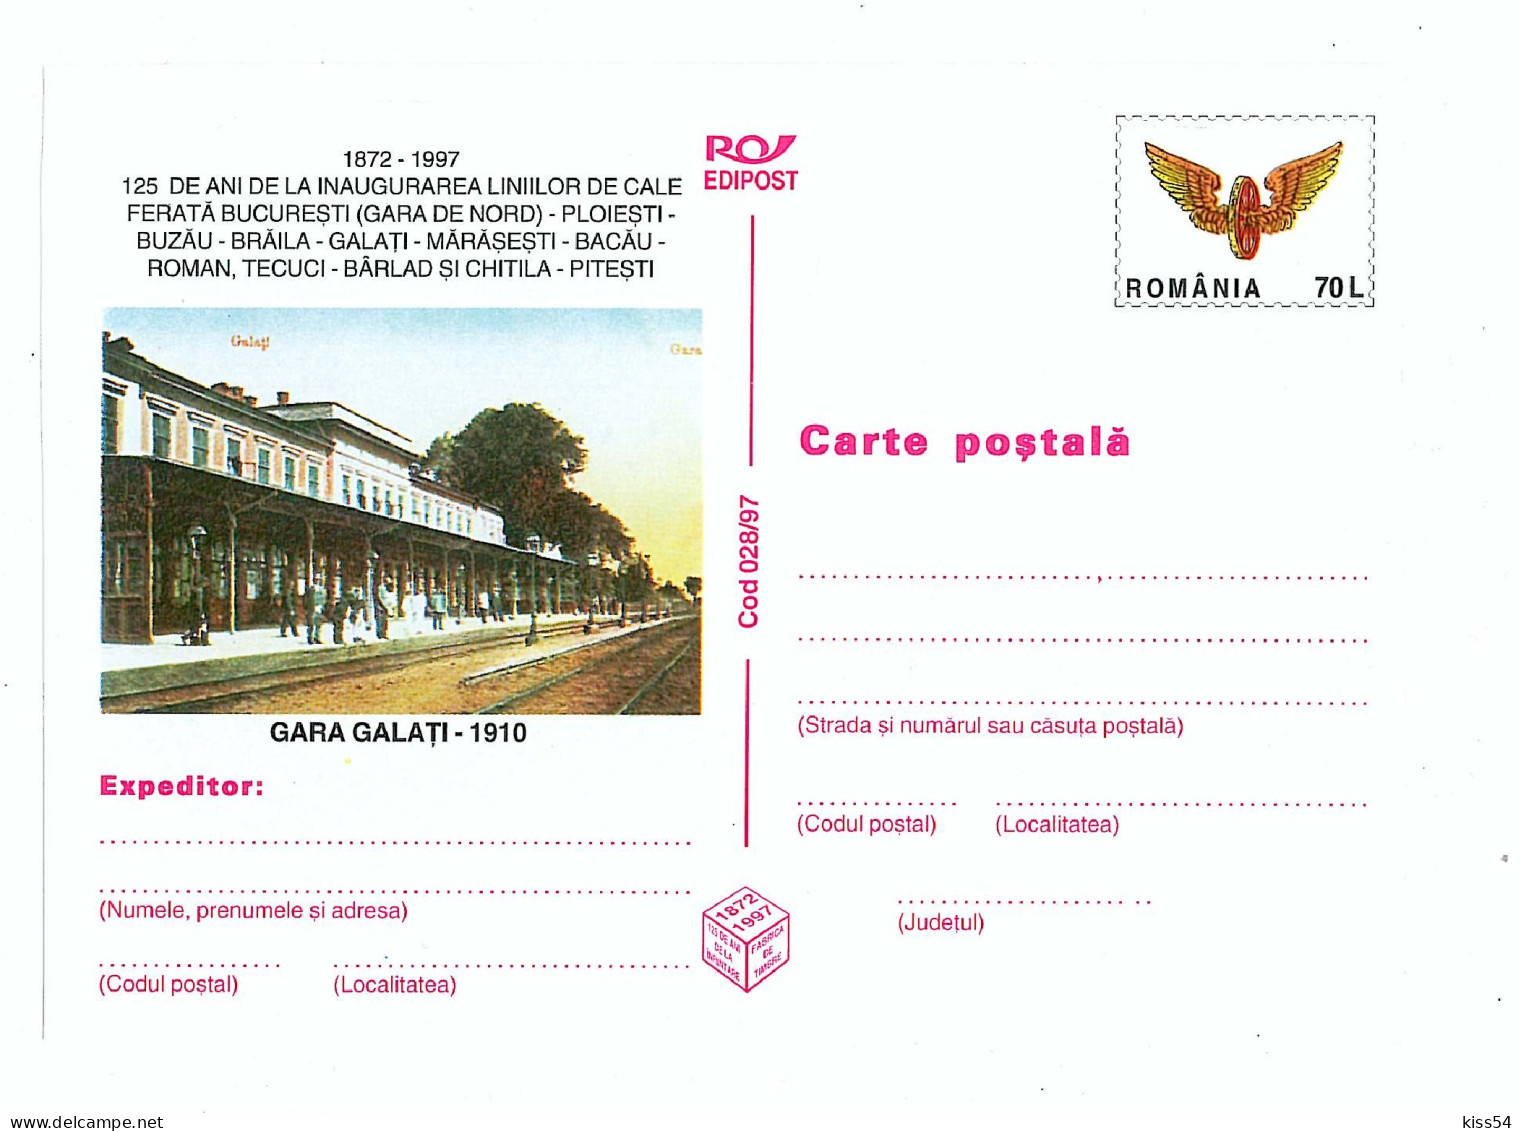 IP 97 - 28 Old Railway Station GALATI, Romania - Stationery - Unused - 1997 - Postal Stationery